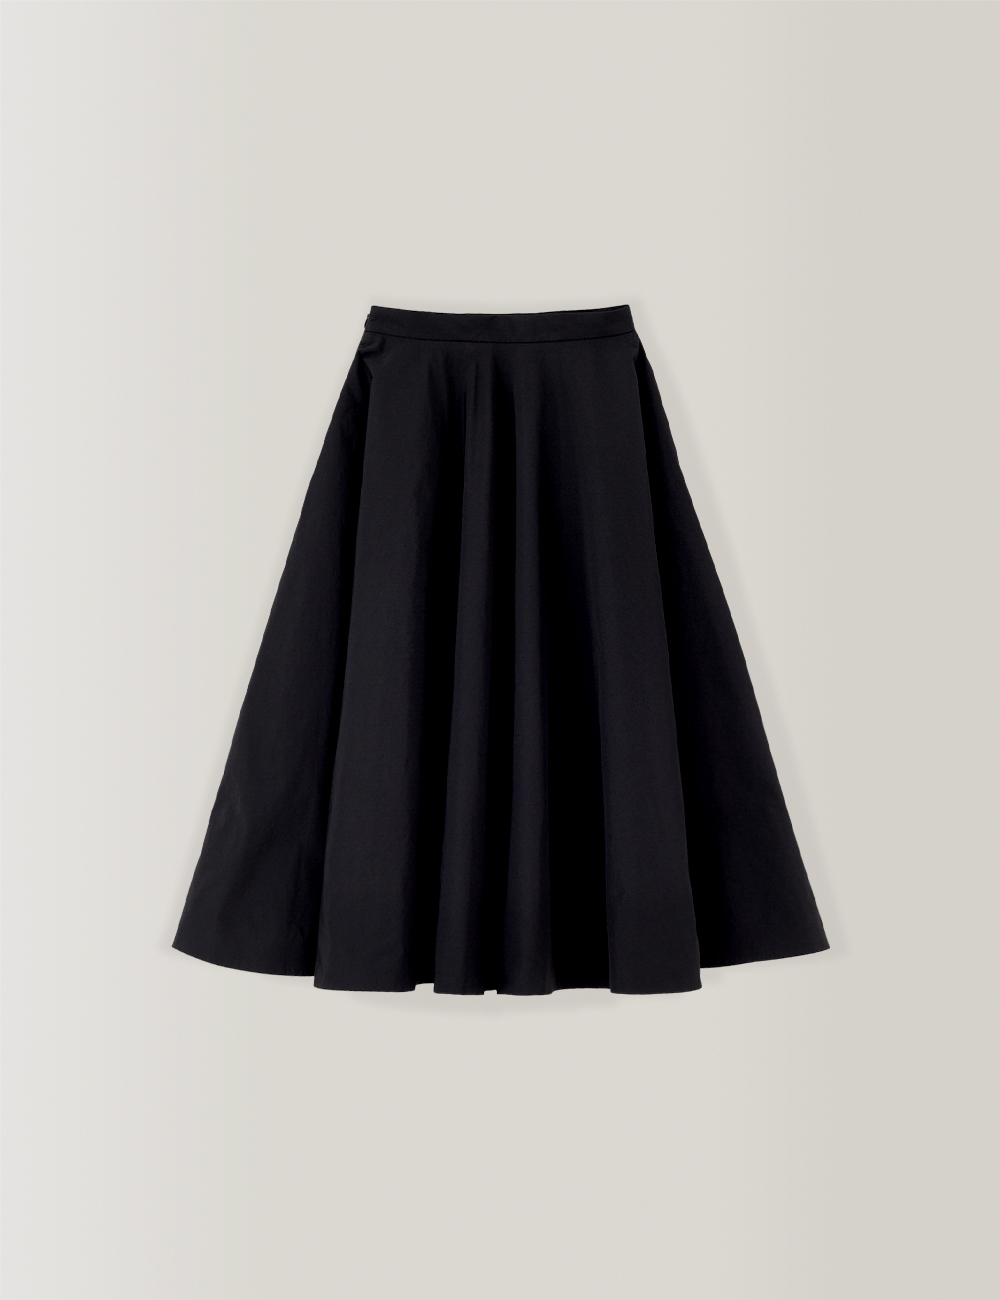 Hepburn Full Skirt (Black)